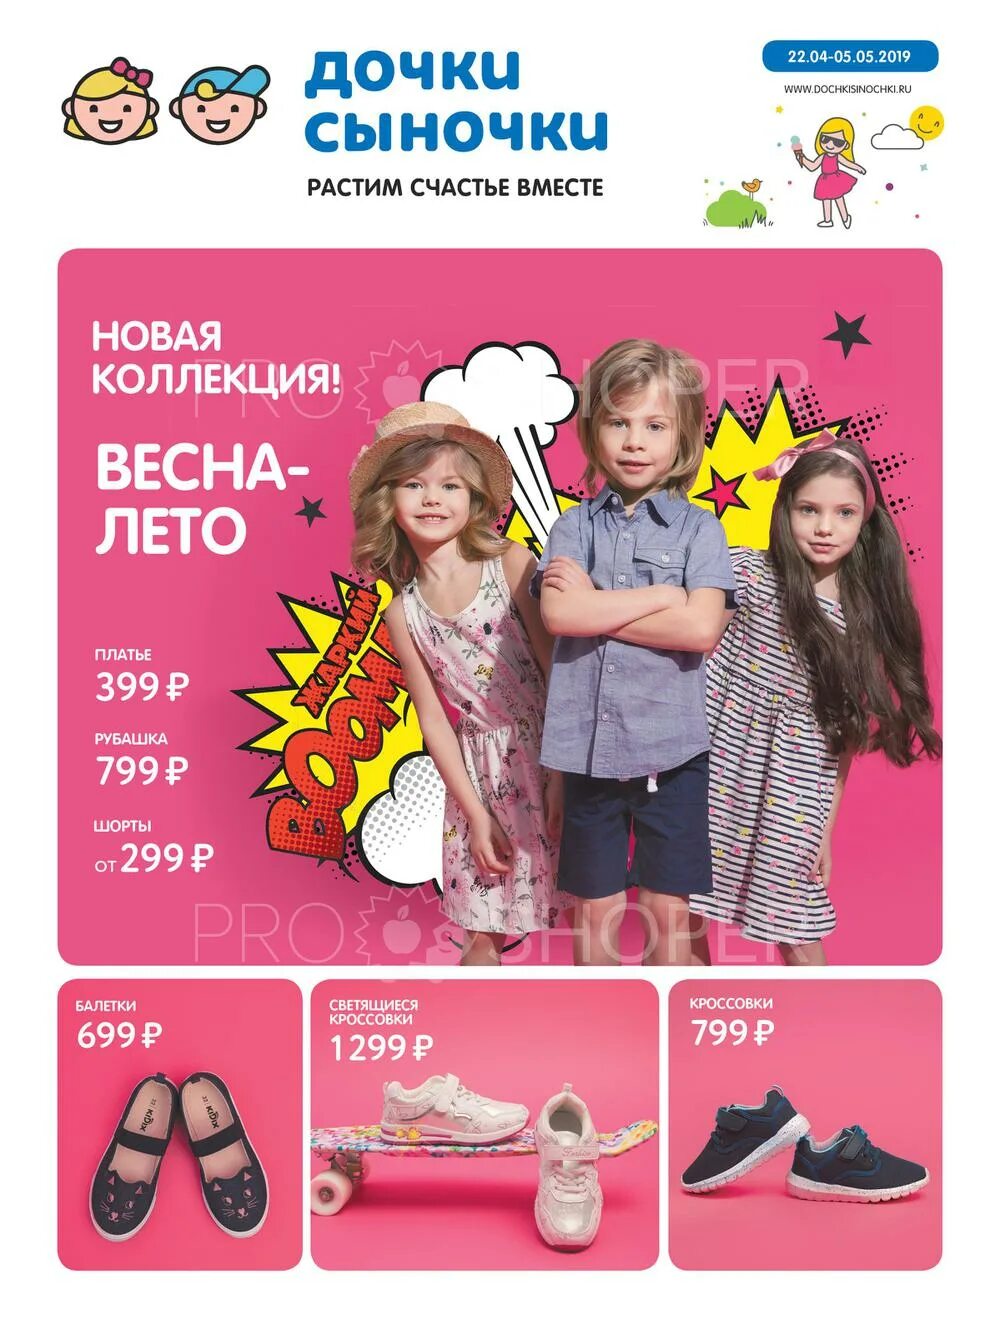 Сайт доч. Дочки Сыночки. Дочки Сыночки реклама. Дочки-Сыночки интернет-магазин. Dochkisinochki интернет магазин.